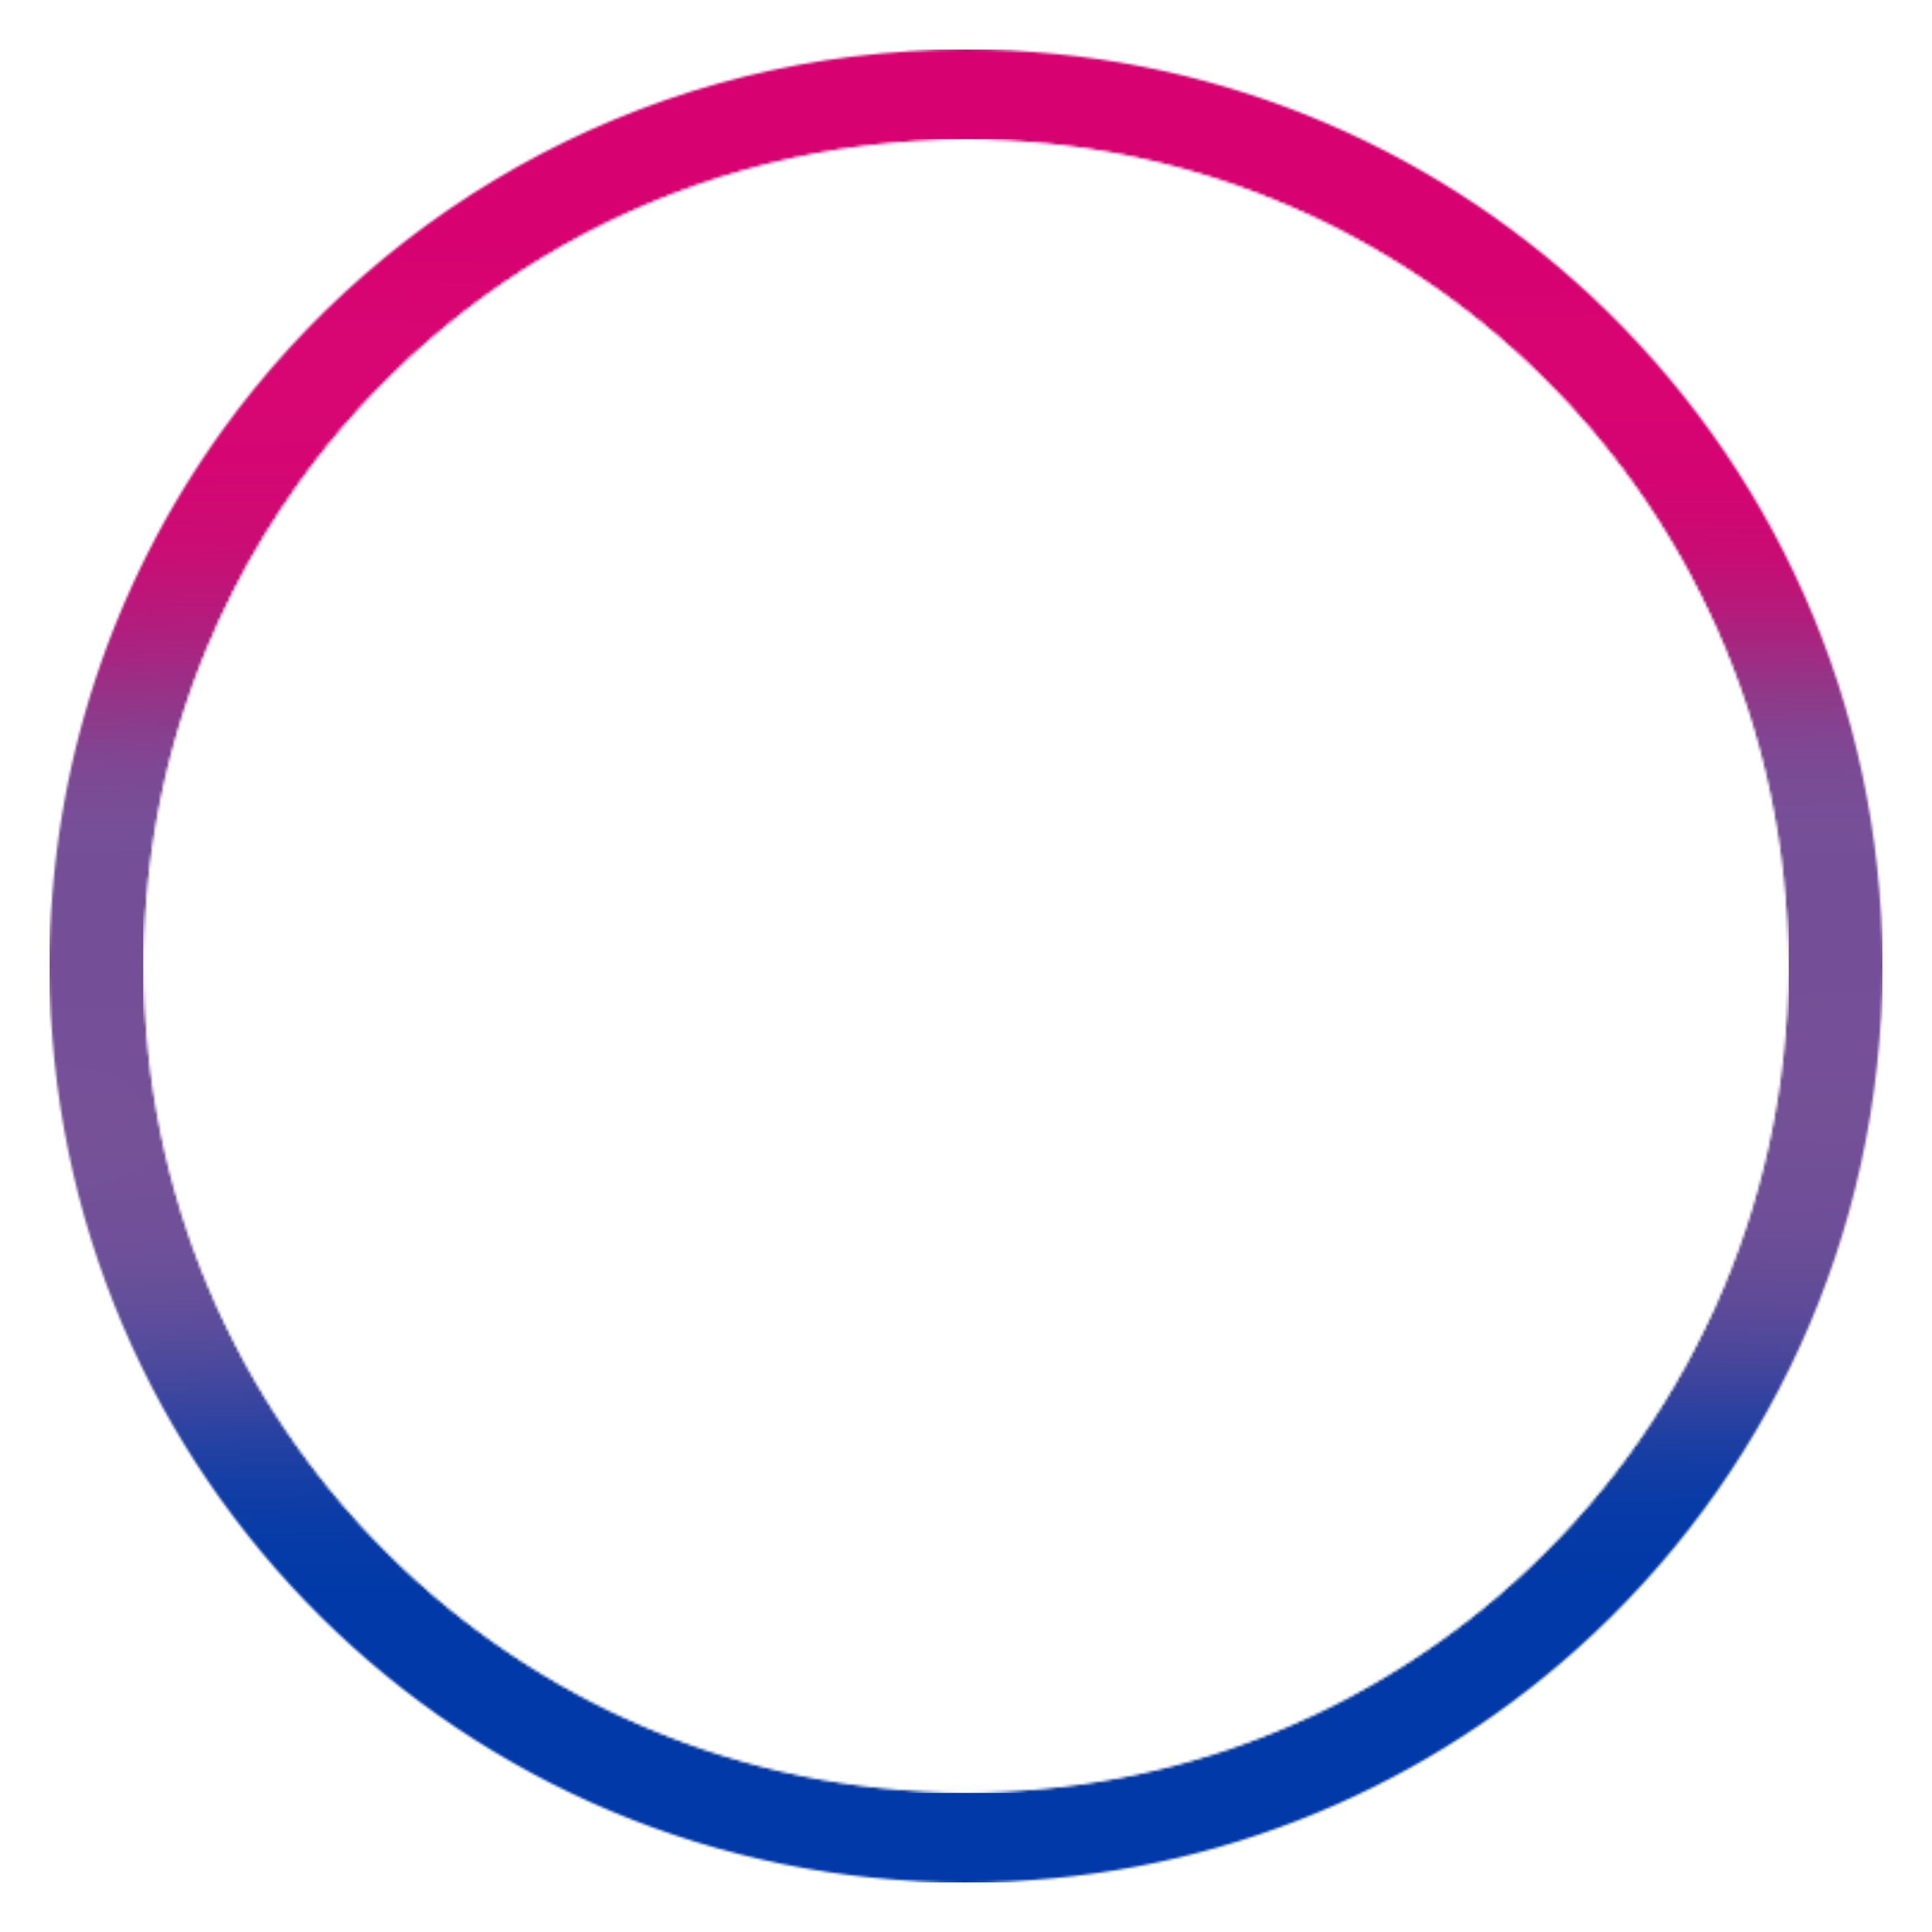 Circle l. Красивый круг. Круг для логотипа. Круг на прозрачном фоне. Окружность на белом фоне.